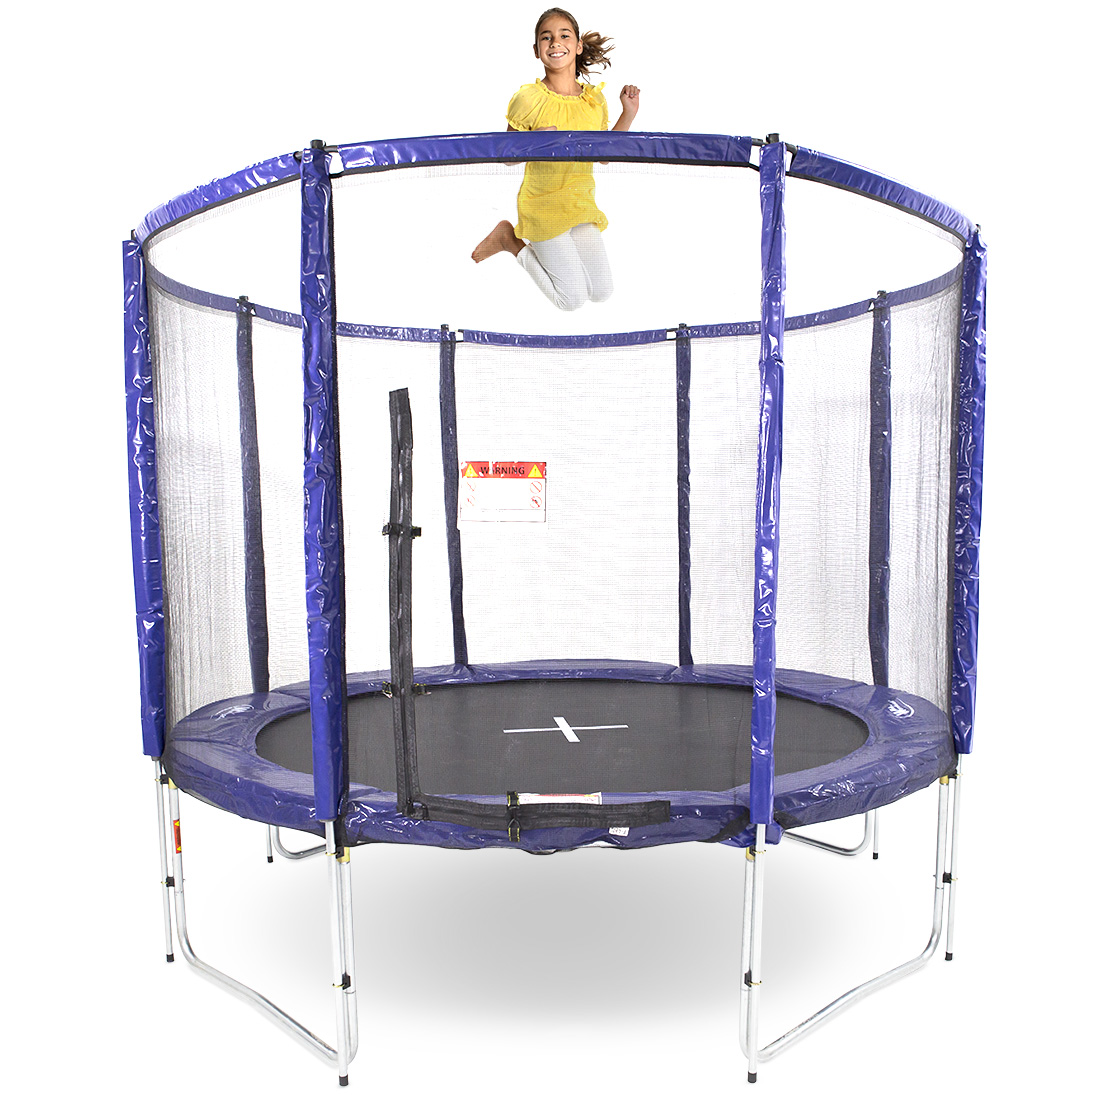 girl-on-round-geetramp-curve-trampoline